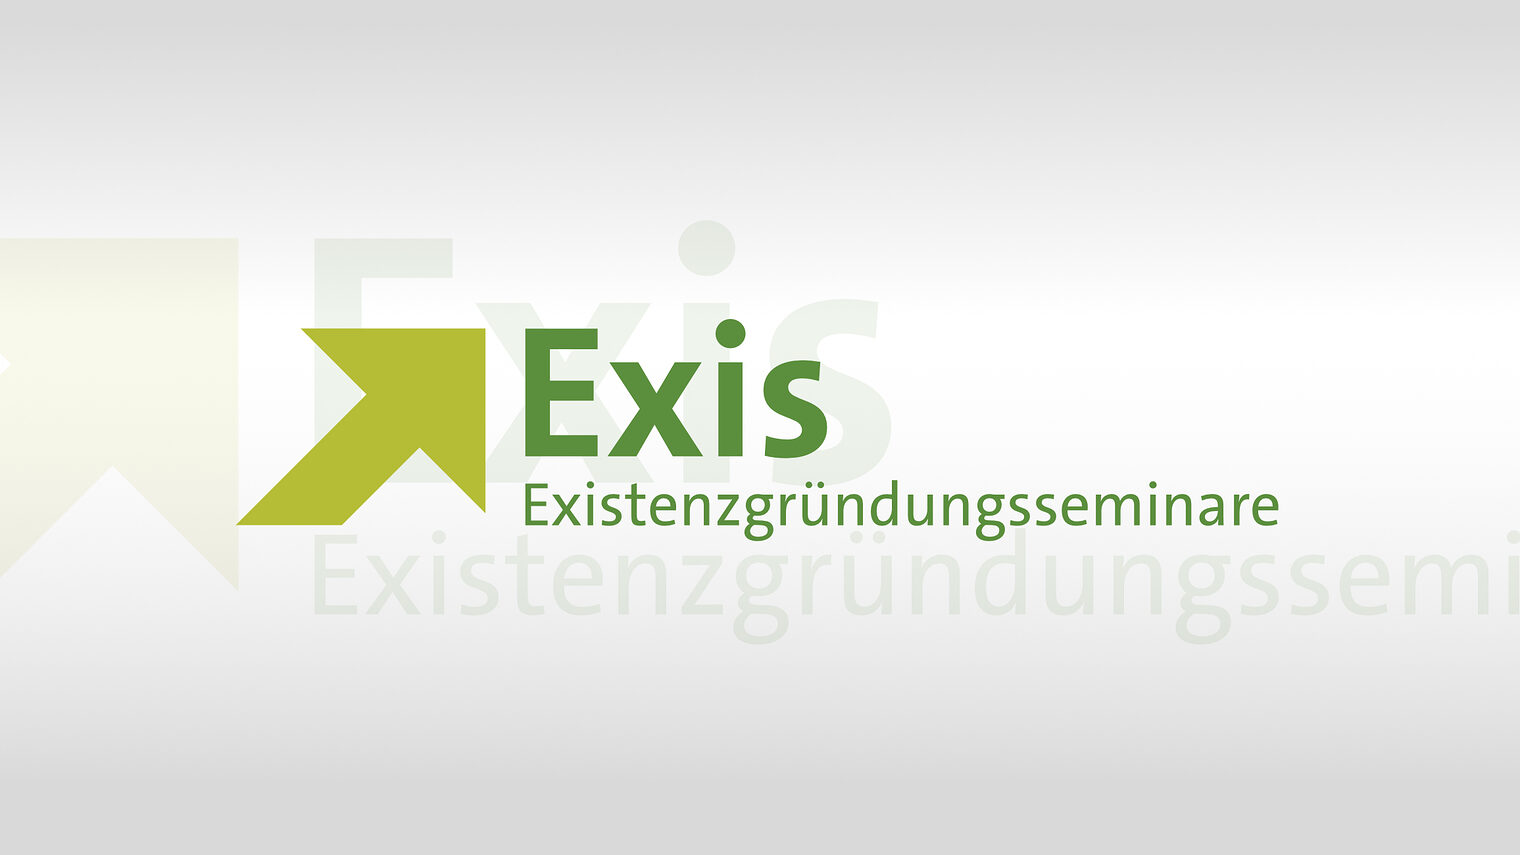 Signet der Veranstaltung: Existenzgründungsseminare; hellgrüner Pfeil von links unten nach rechts oben zeigend mit dem Wortmarke "Exis" und dem Zusatz Existentzgründungsseminare